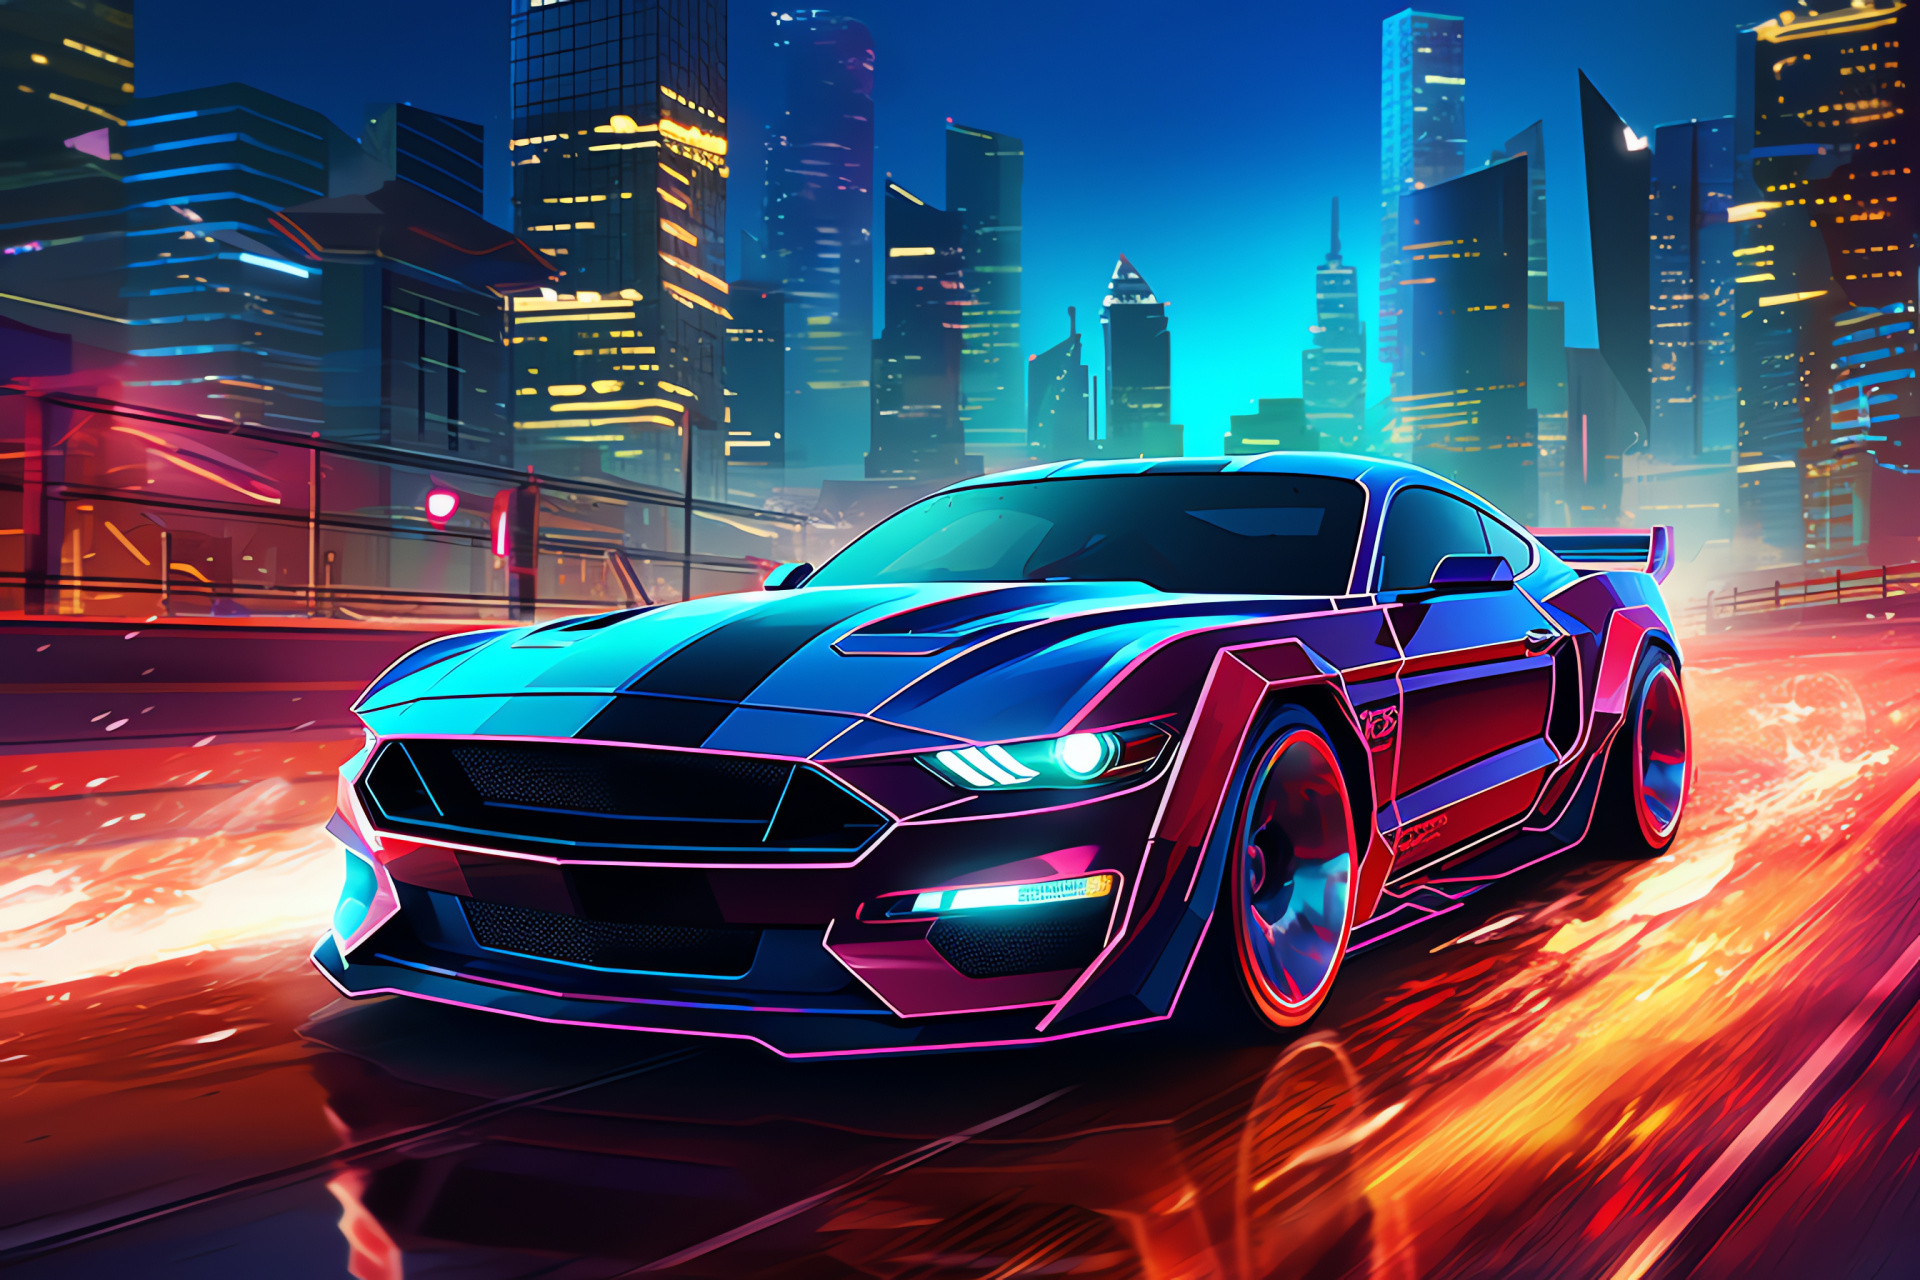 Futuristic Mustang bird-eye, Cyberpunk cityscape car, Digital world transport, High-tech neon Mustang, Future car above, HD Desktop Image